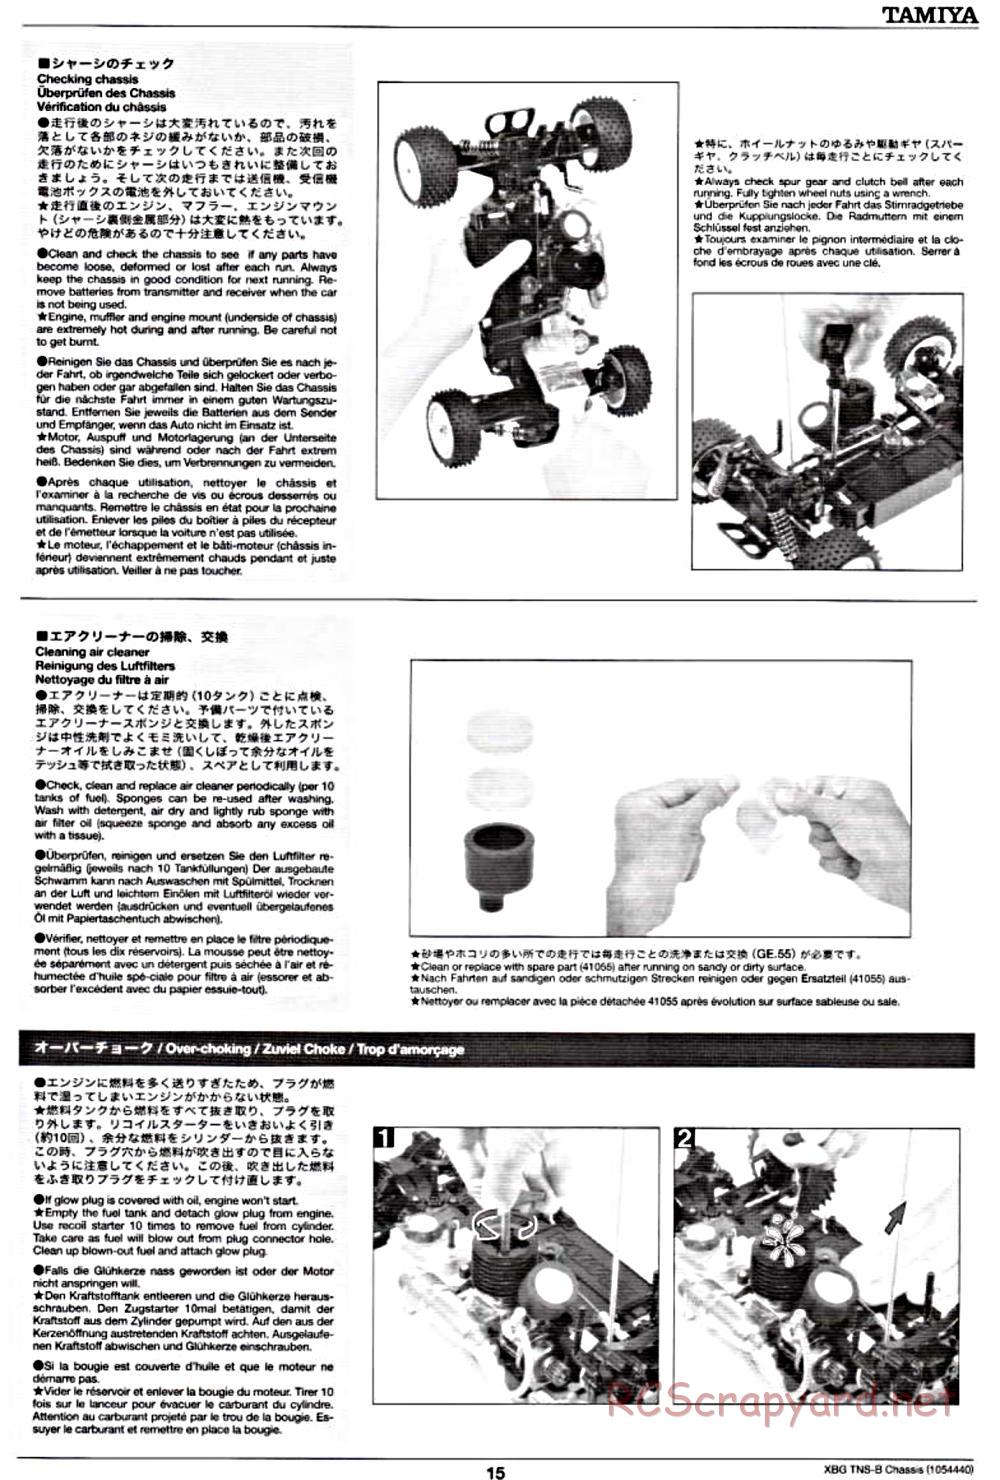 Tamiya - TNS-B Chassis - Manual - Page 15